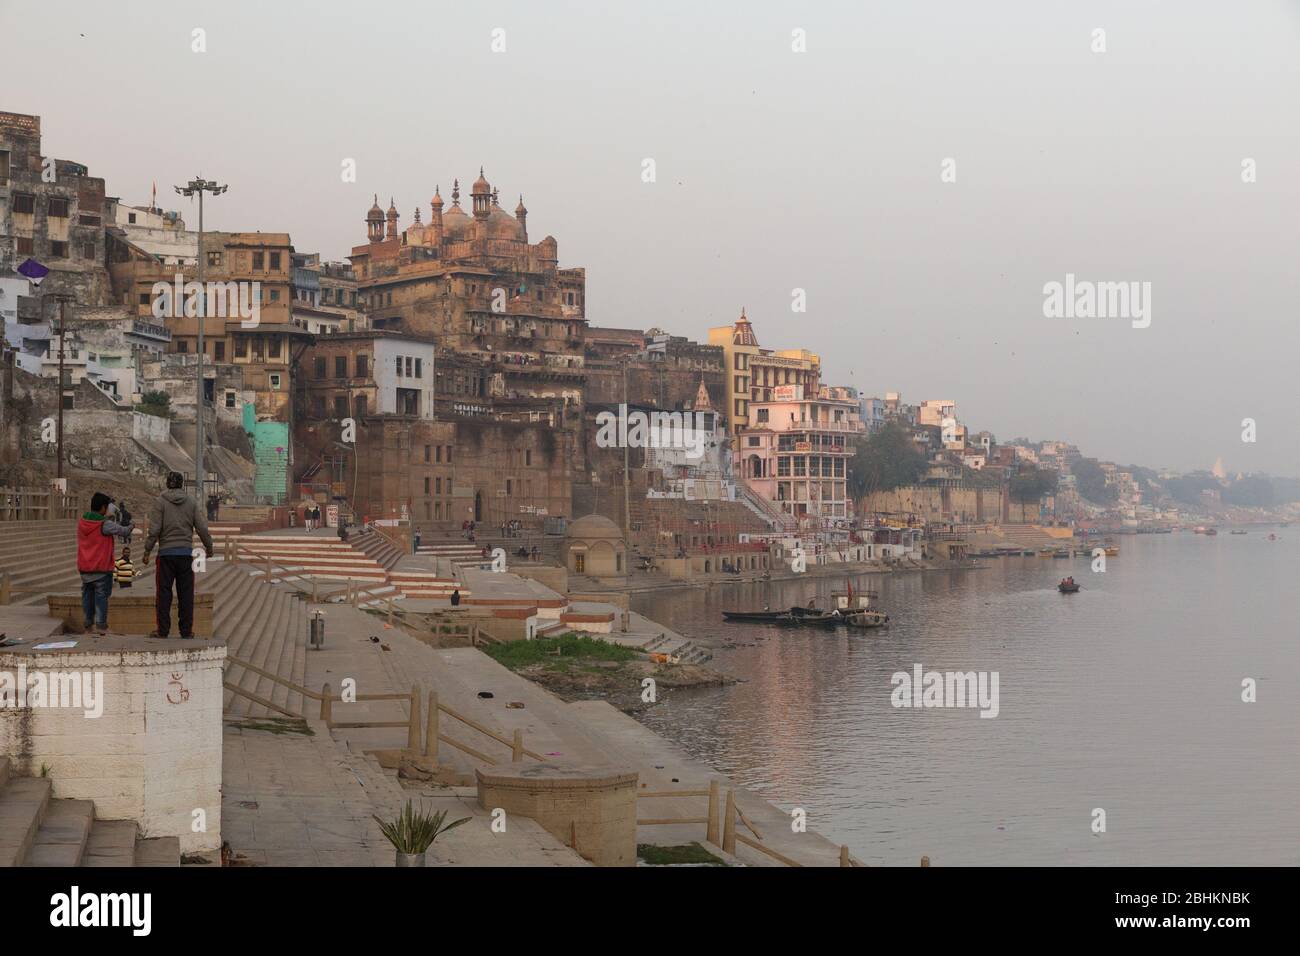 Ein Blick auf alte strukturierte Häuser und Gebäude genannt Ghats am Ufer des Flusses Ganges Stockfoto